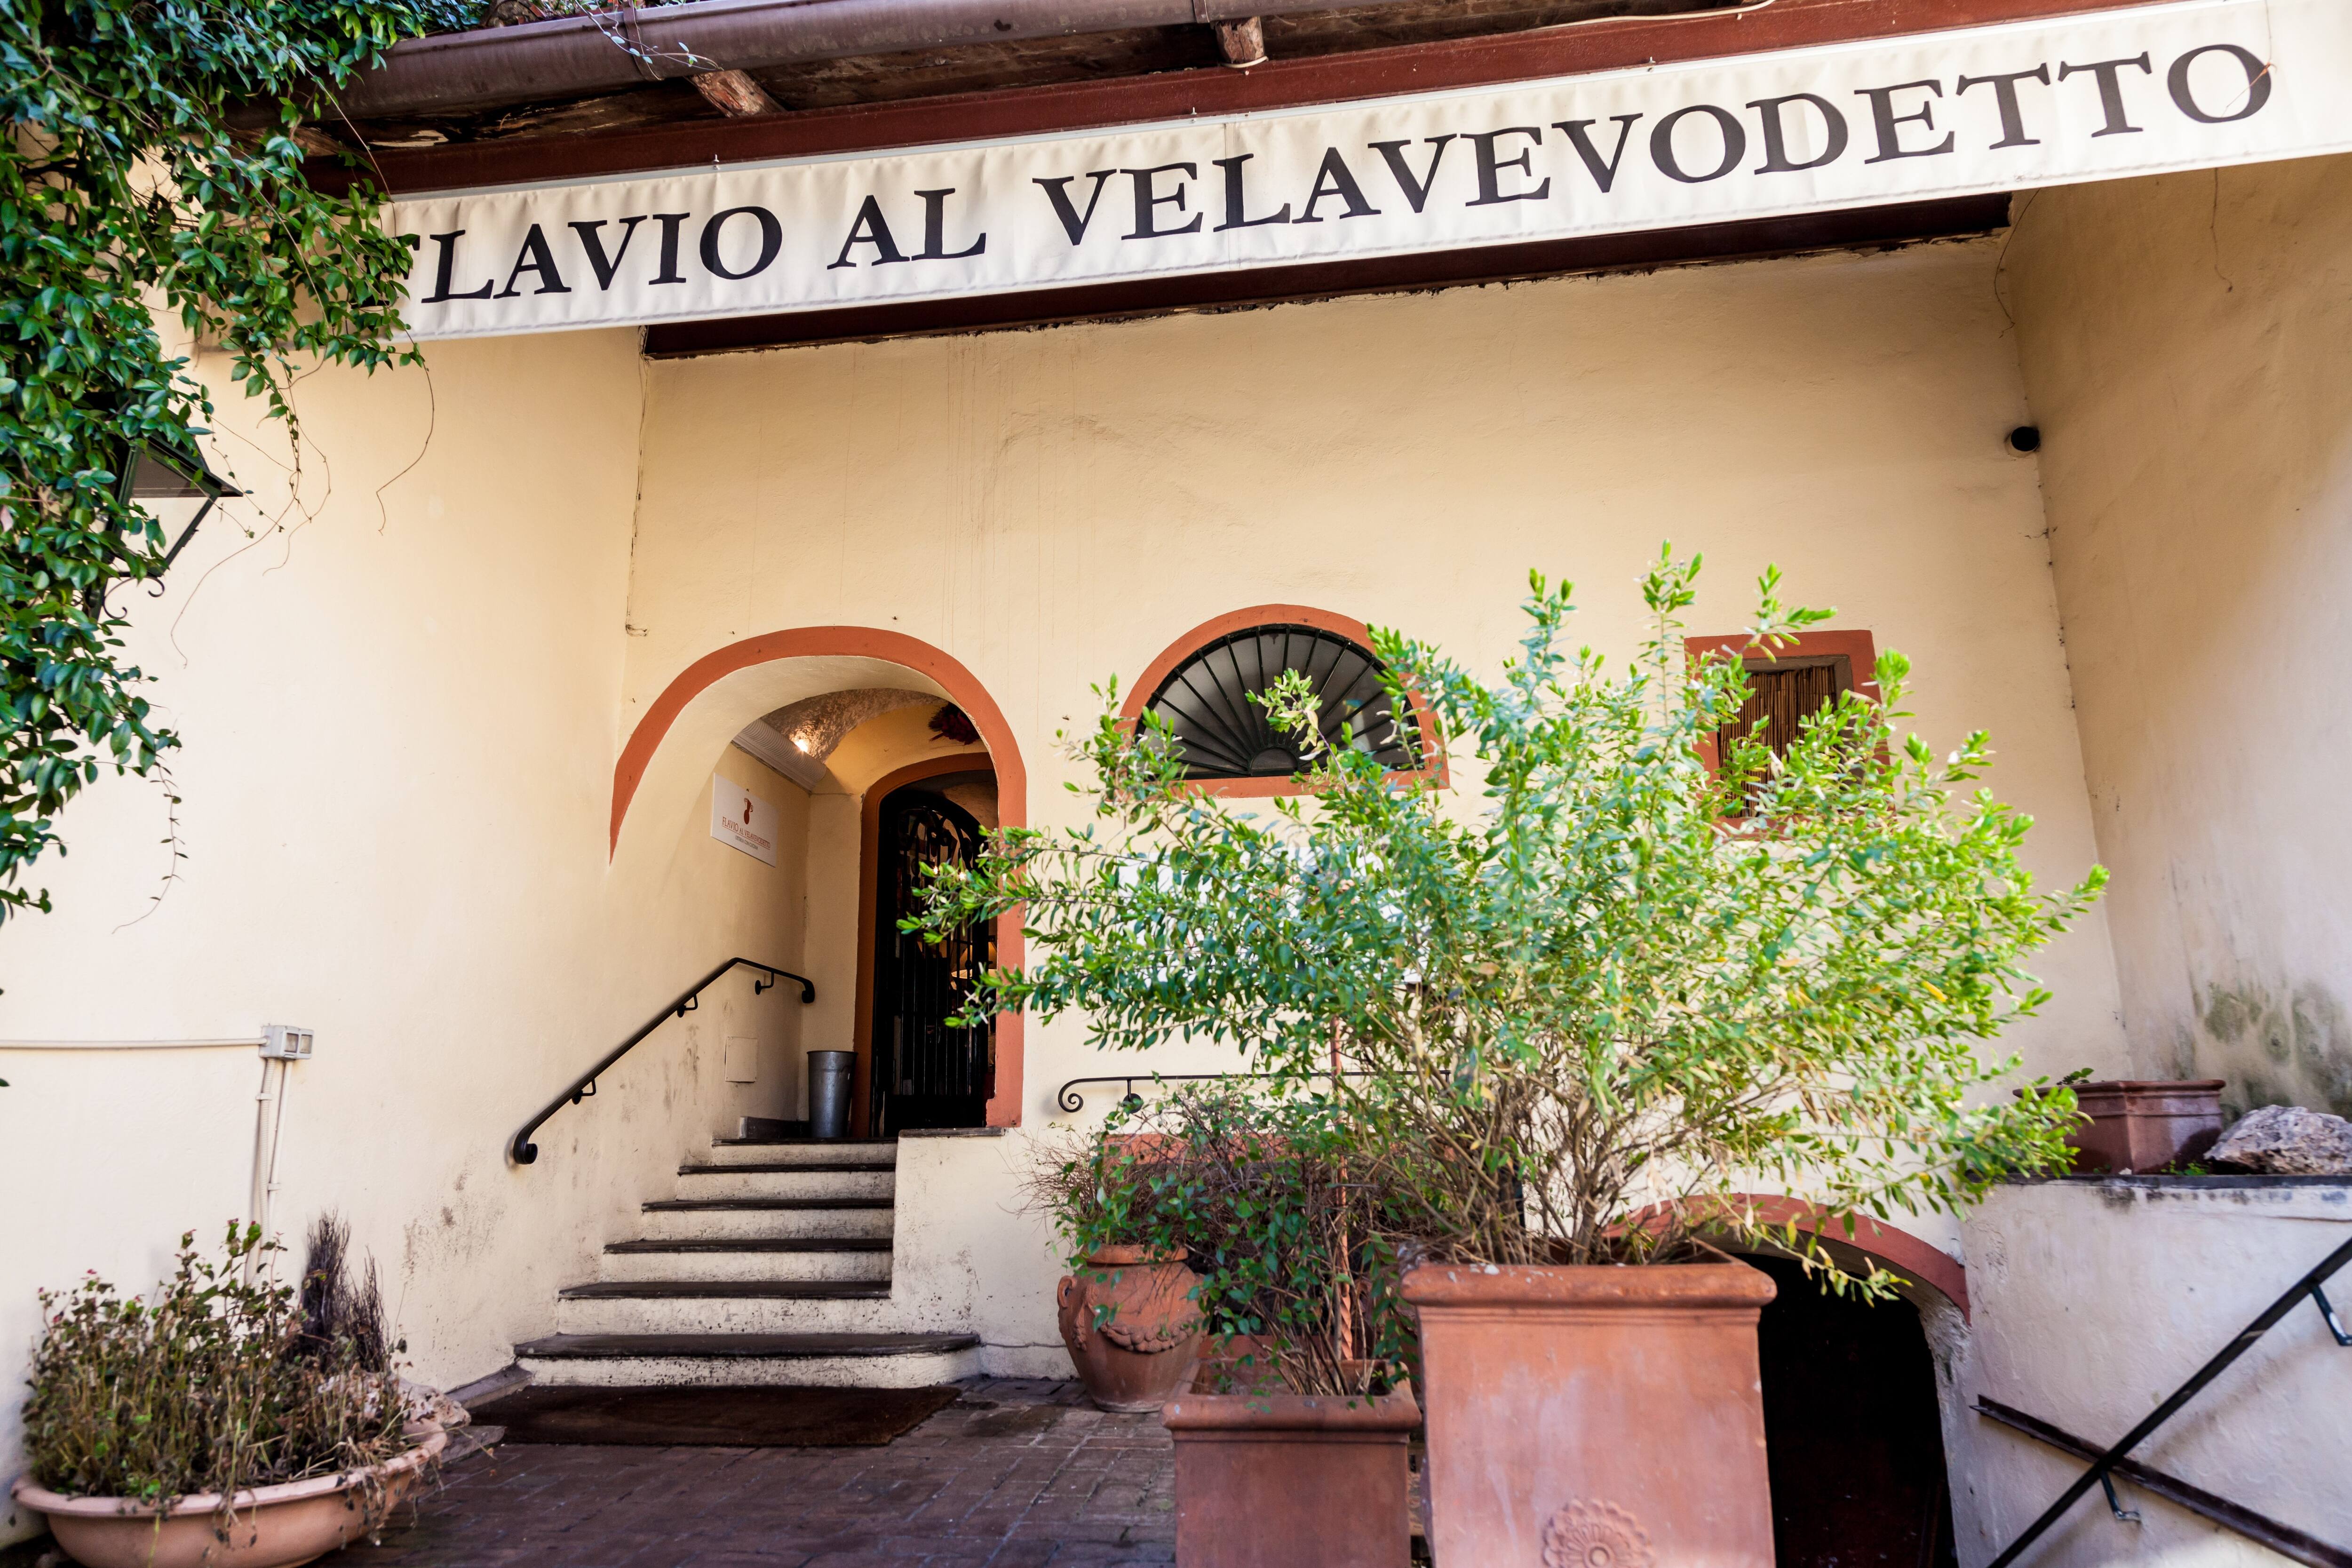 Flavio Al Velavevodetto Menu Menu For Flavio Al Velavevodetto Testaccio Roma